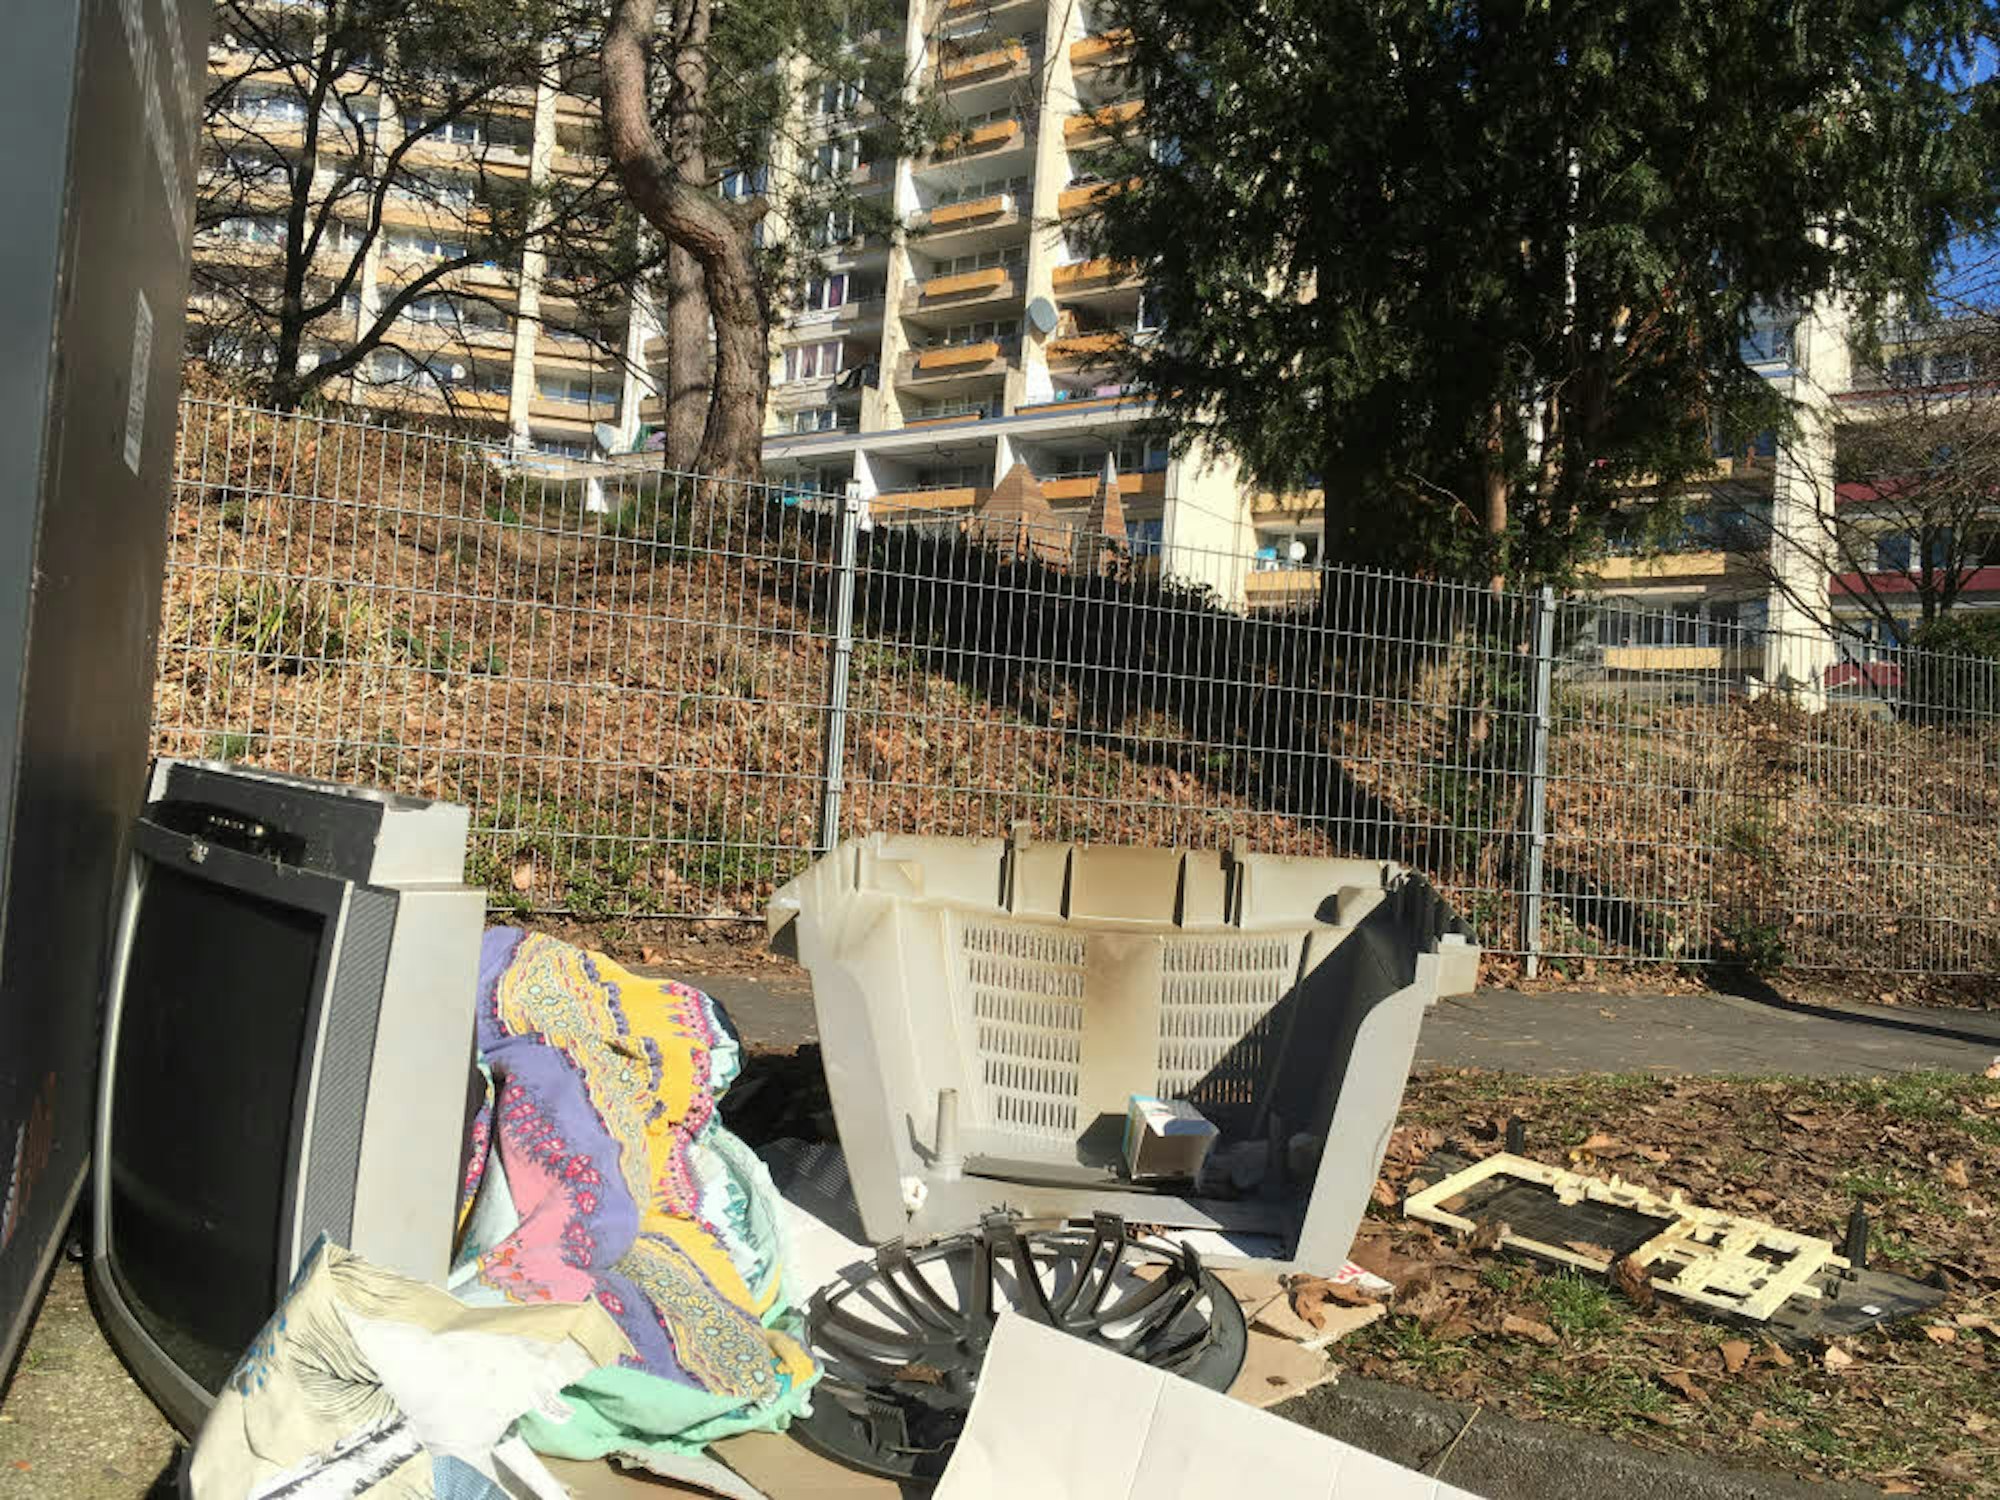 Wilder Müll an der Brüsseler Straße, dahinter ein gepflegter Spielplatz – das sind die Gegensätze im Veedel.